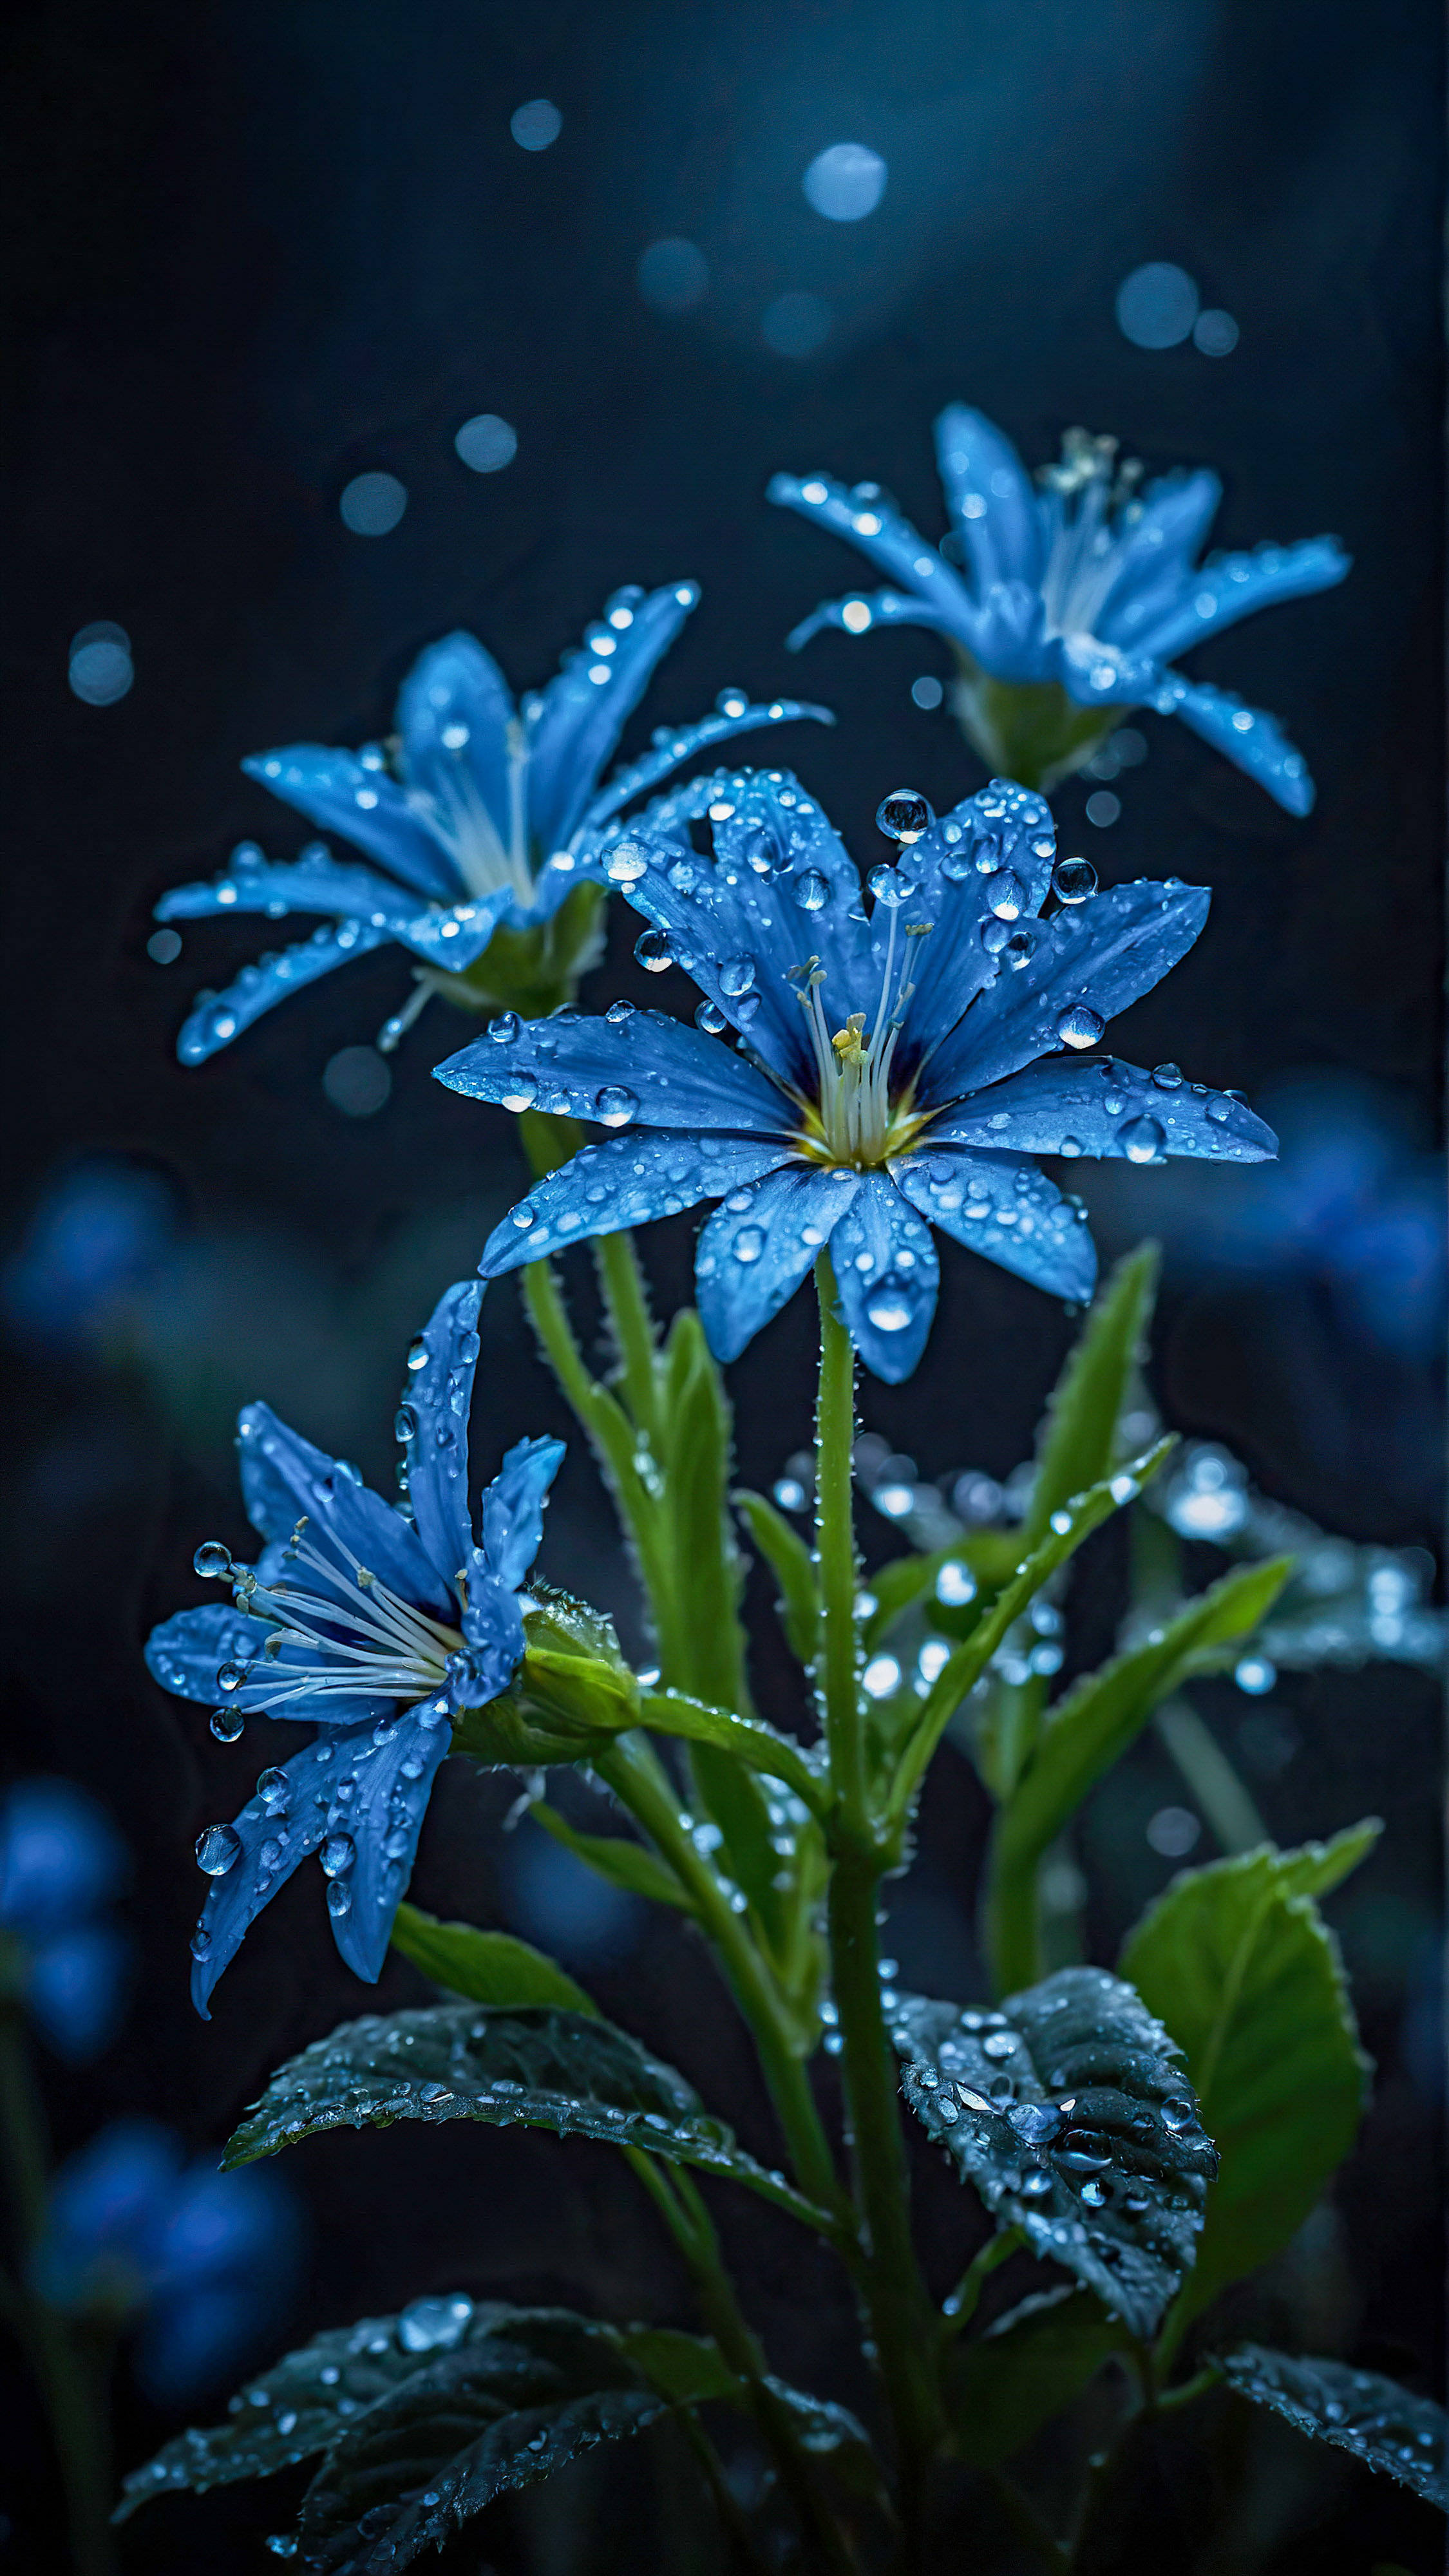 Ressentez la tranquillité de la nature avec notre bel arrière-plan pour iPhone, une scène sereine et mystique de fleurs bleues lumineuses avec des gouttes de rosée, sur un fond sombre et flou. 